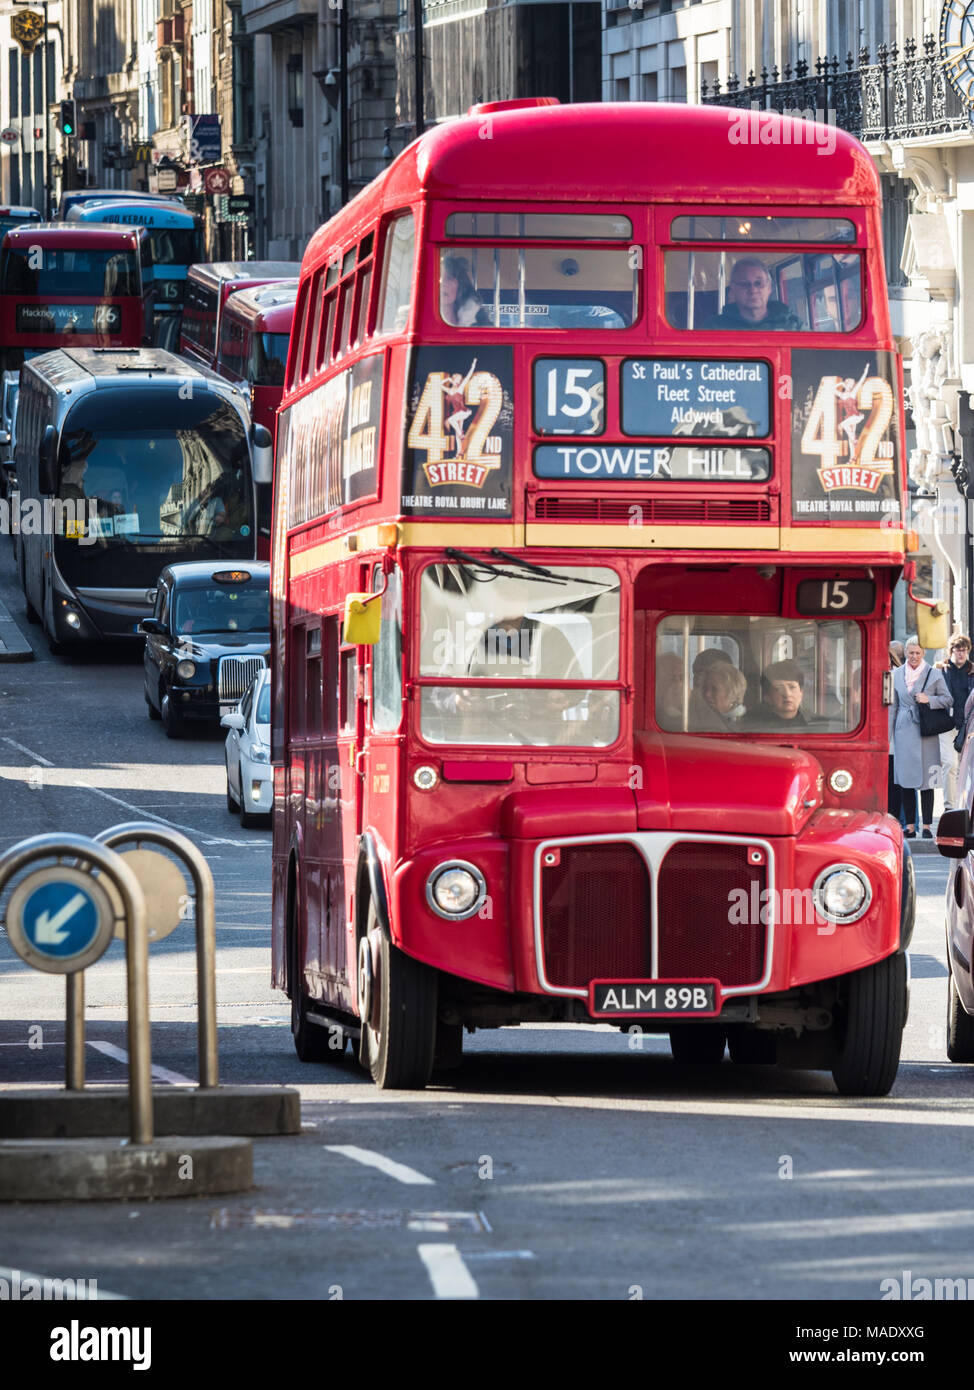 Klassischer Londoner Bus - Vintage LT Routemaster wird noch auf der historischen Route 15 im Zentrum Londons zwischen Trafalgar Square und Tower Hill eingesetzt Stockfoto